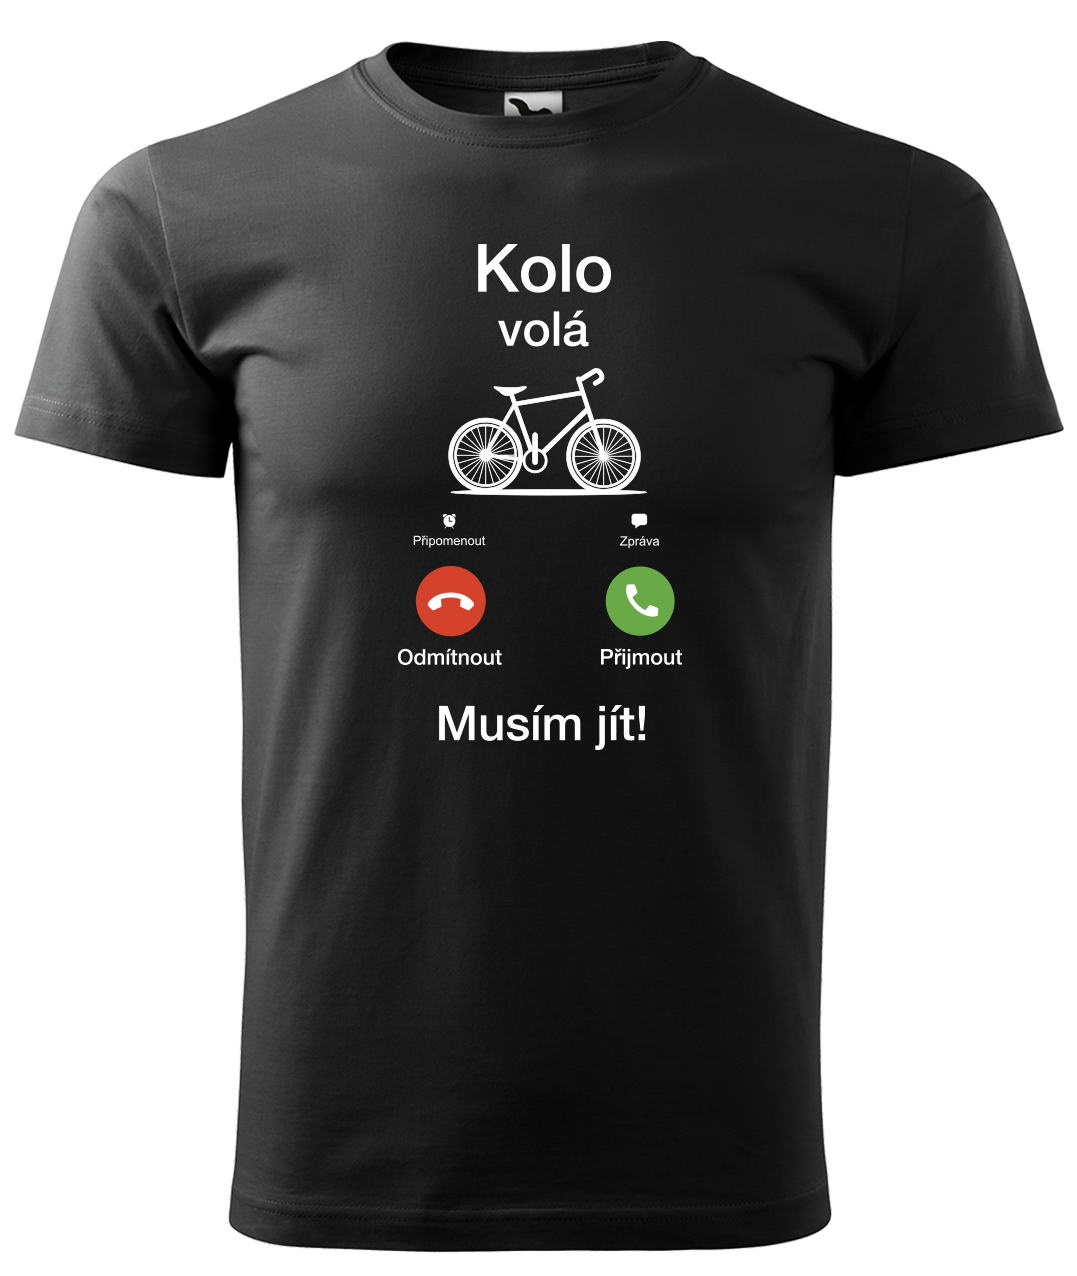 Dětské tričko pro cyklistu - Kolo volá Velikost: 4 roky / 110 cm, Barva: Černá (01)